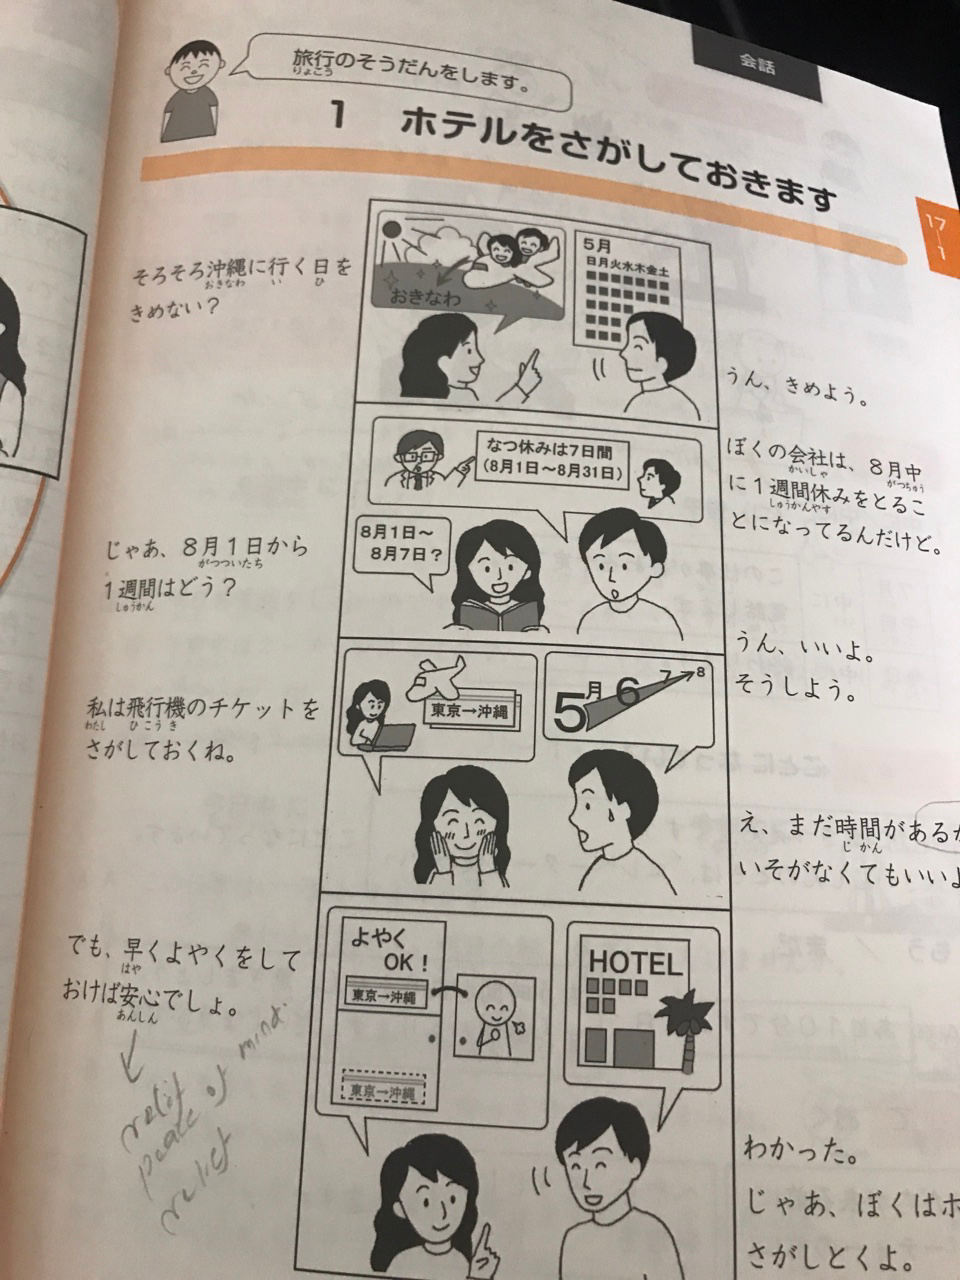 online Japanese class